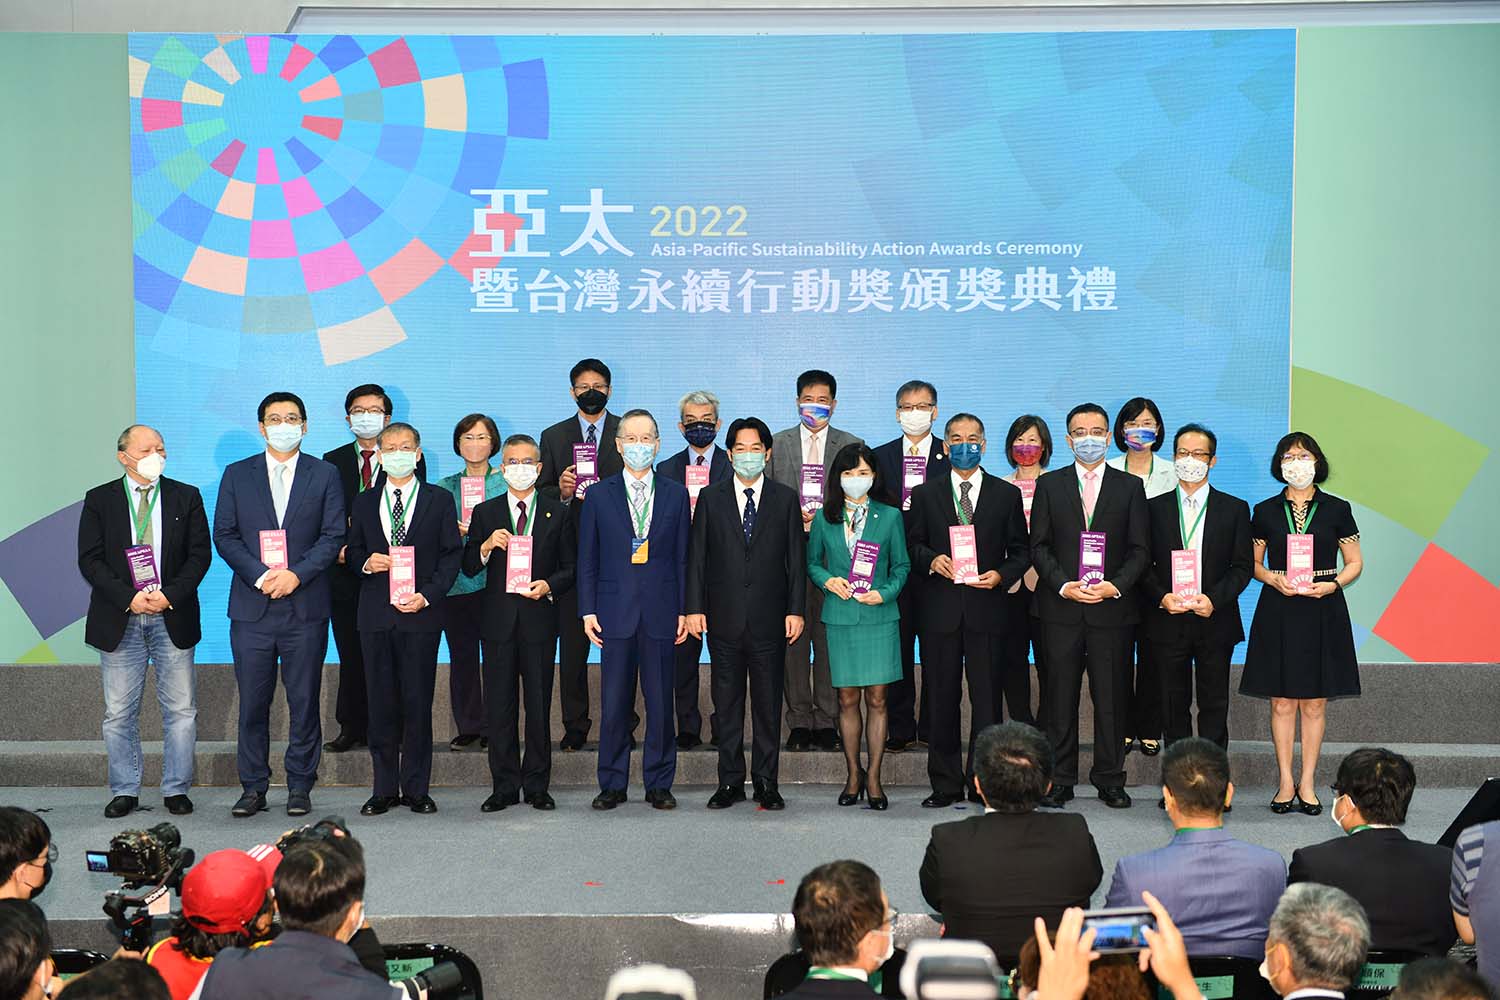 由台灣永續能源研究基金會所屬台灣企業永續獎執行委員會主辦的2023「傑出永續青年獎」自即日起開放報名至5月19日（五）止